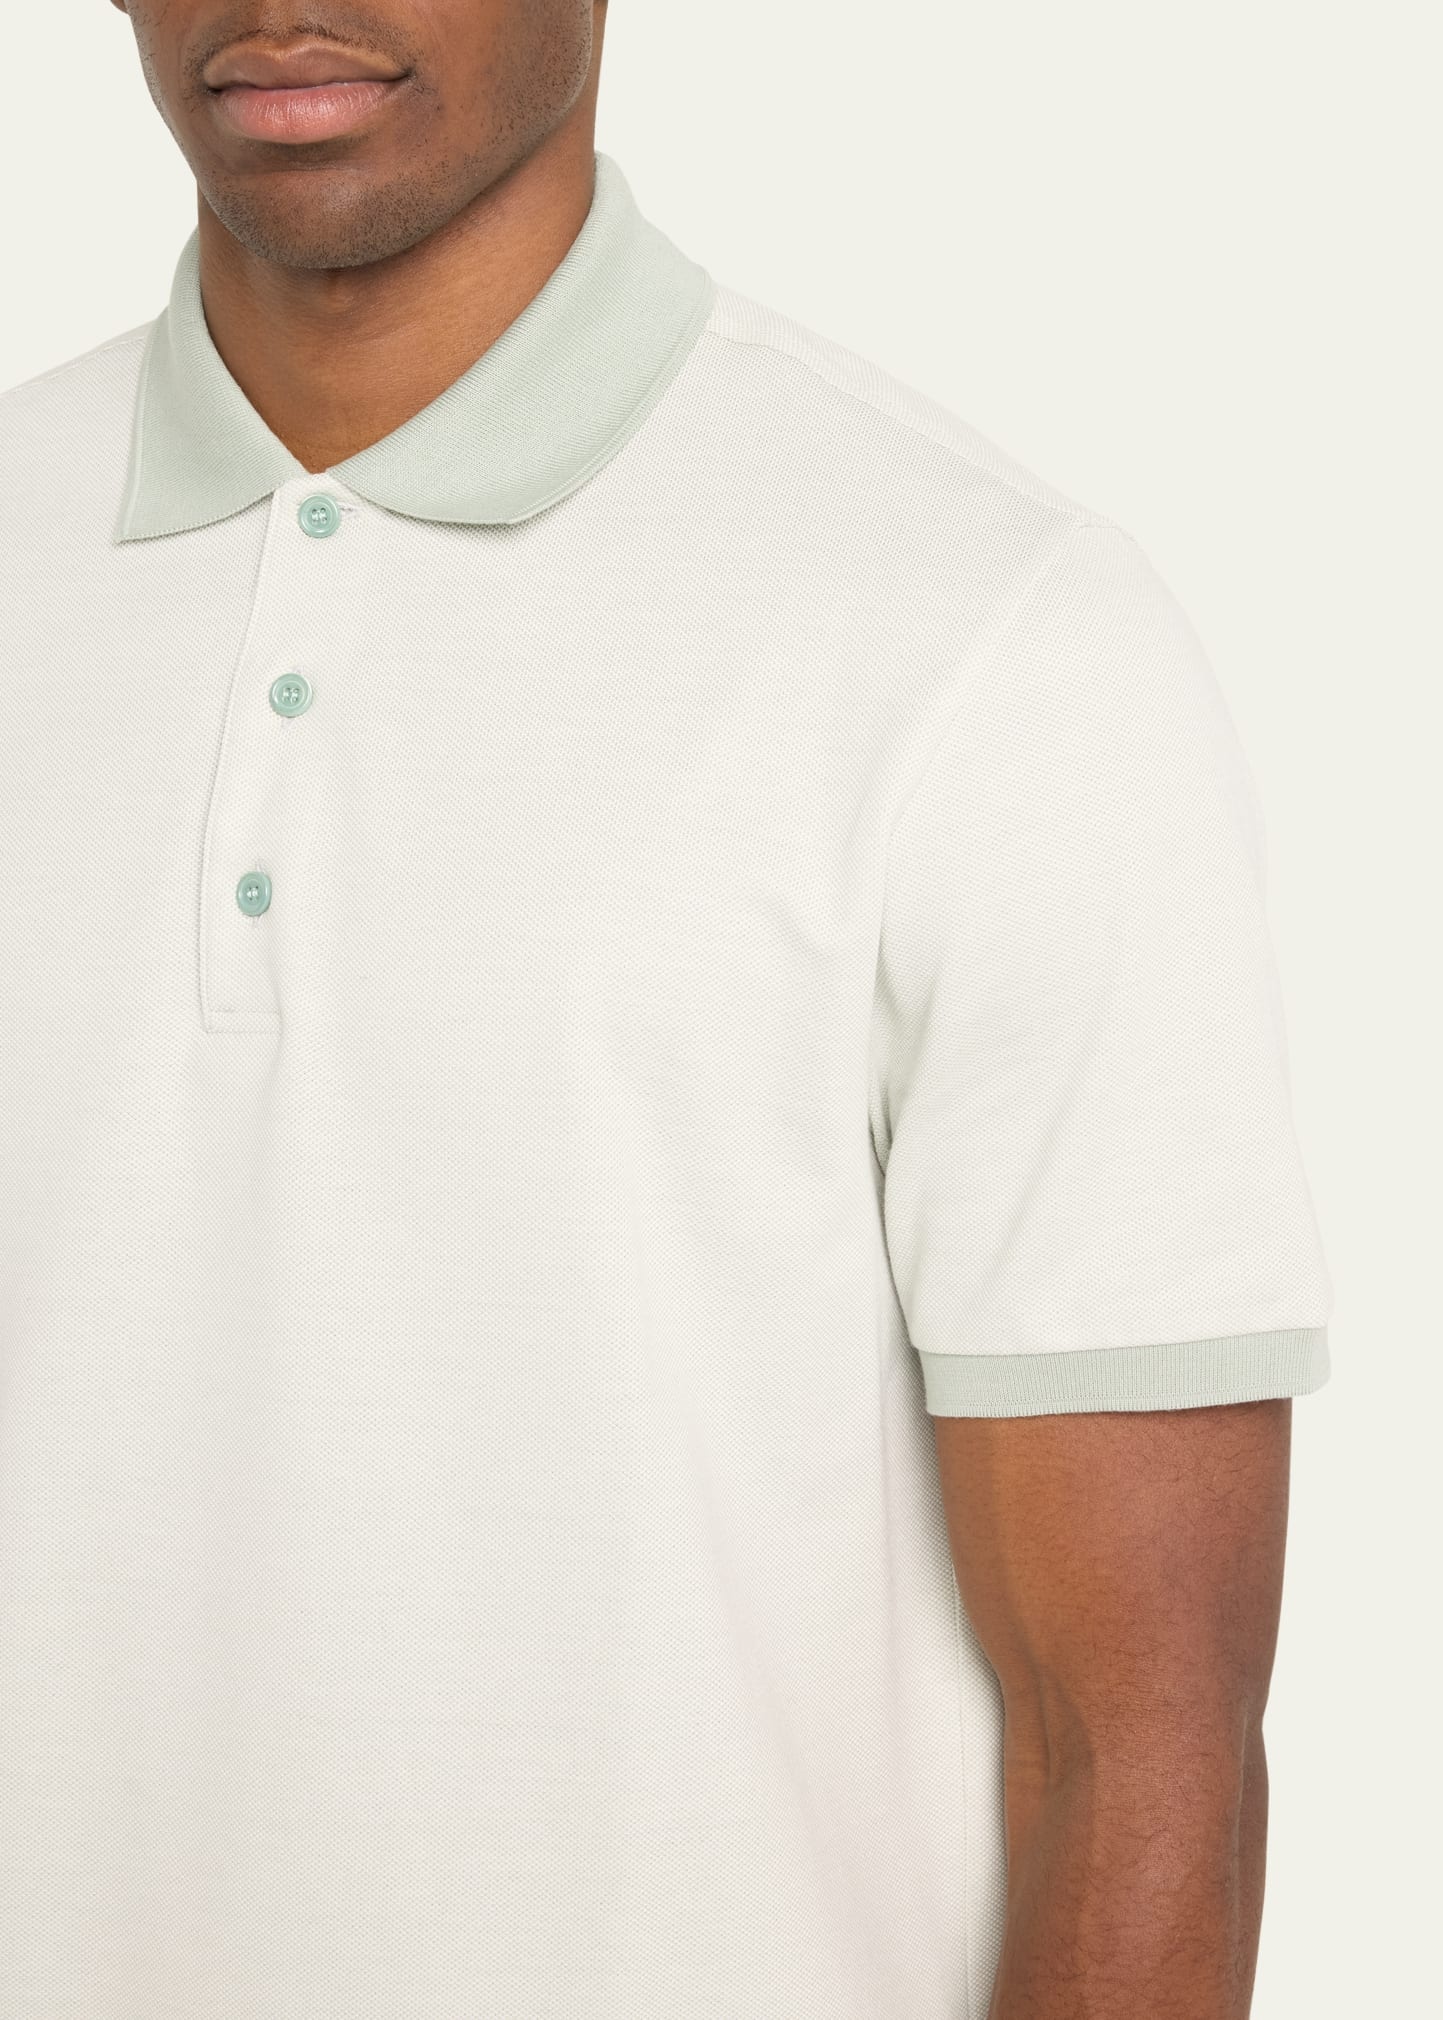 Men's Cotton Polo Shirt - 5